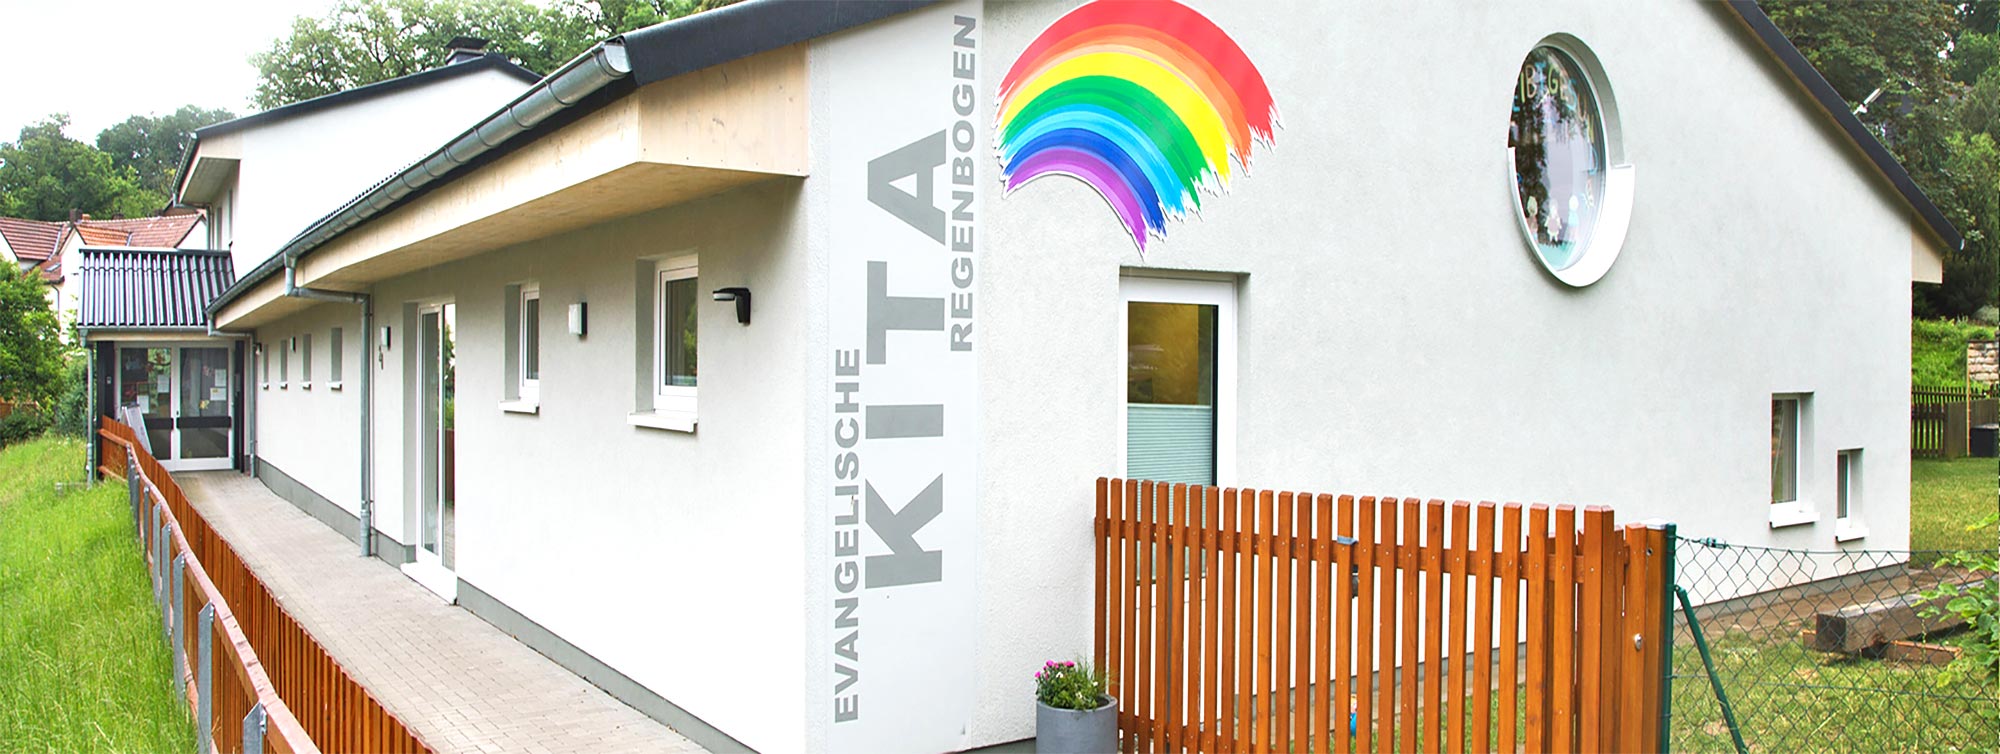 Außenansicht der Kindertagesstätte Regenbogen in Bad Arolsen - Mengeringhausen